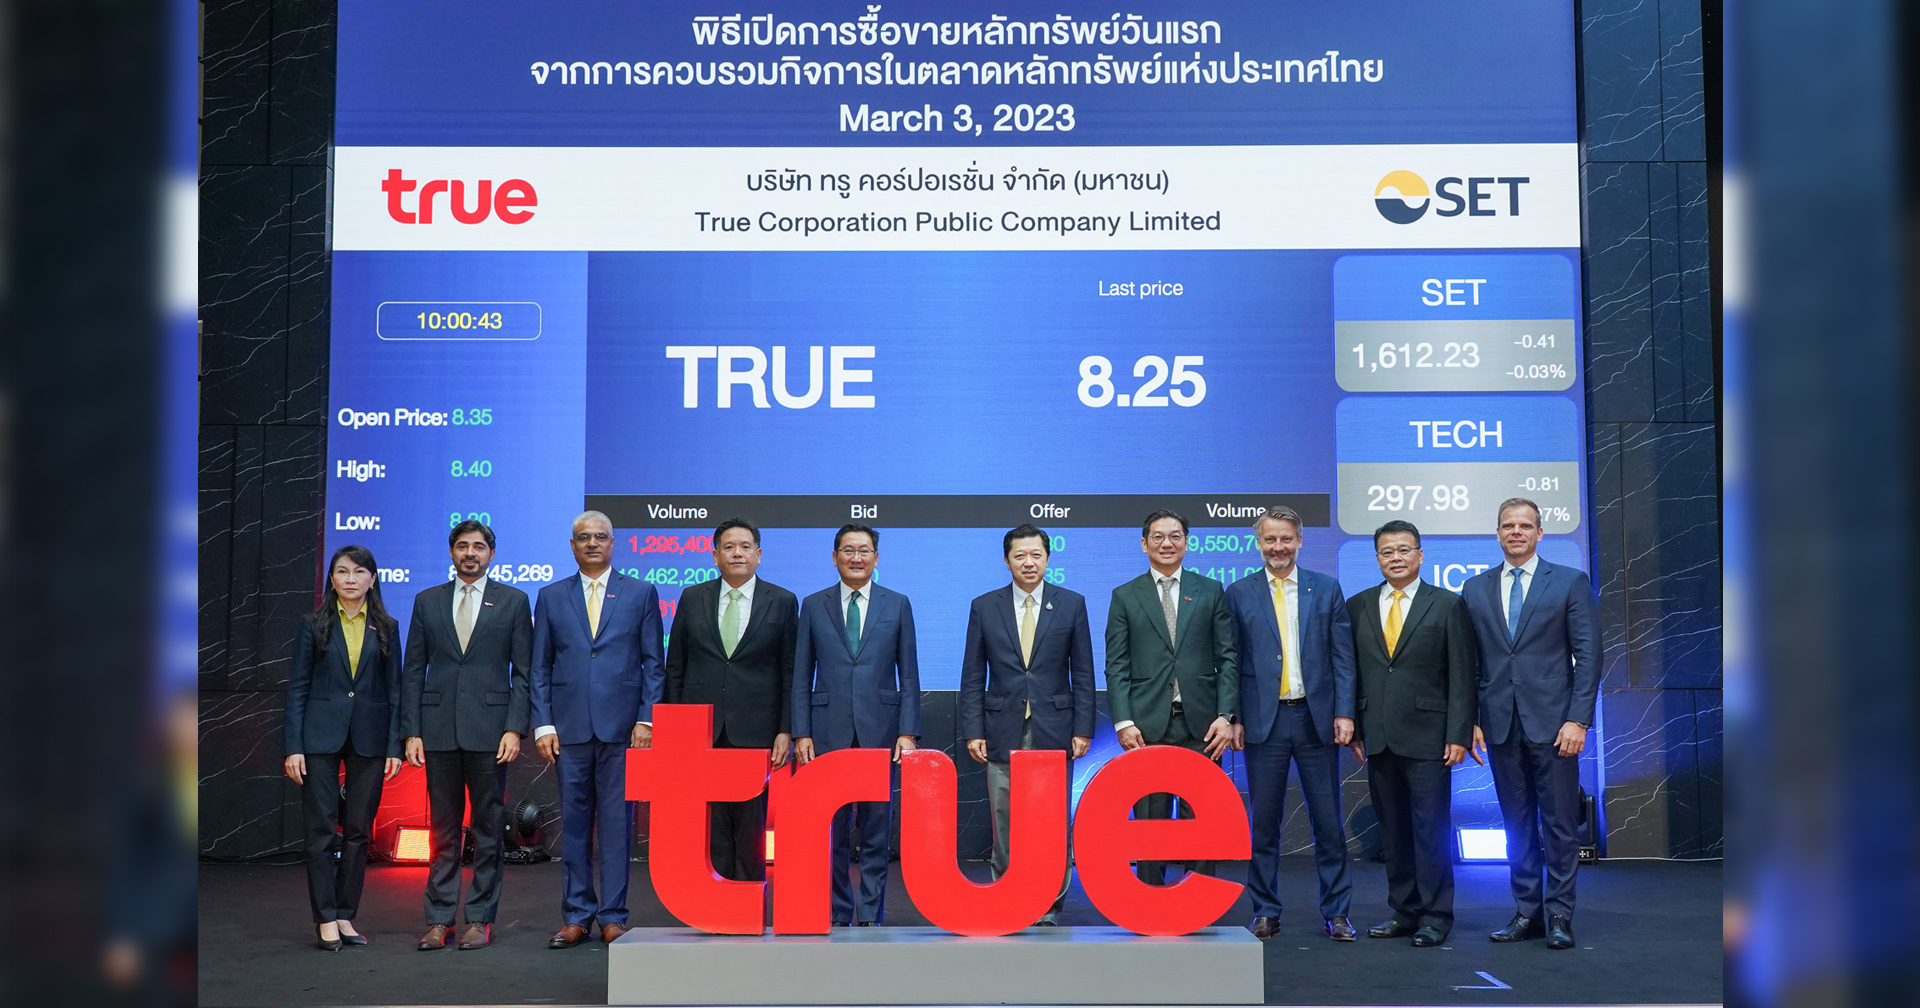 พิธีเปิดการซื้อขายหลักทรัพย์ TRUE วันแรก จากการควบรวมกิจการในตลาดหลักทรัพย์แห่งประเทศไทย